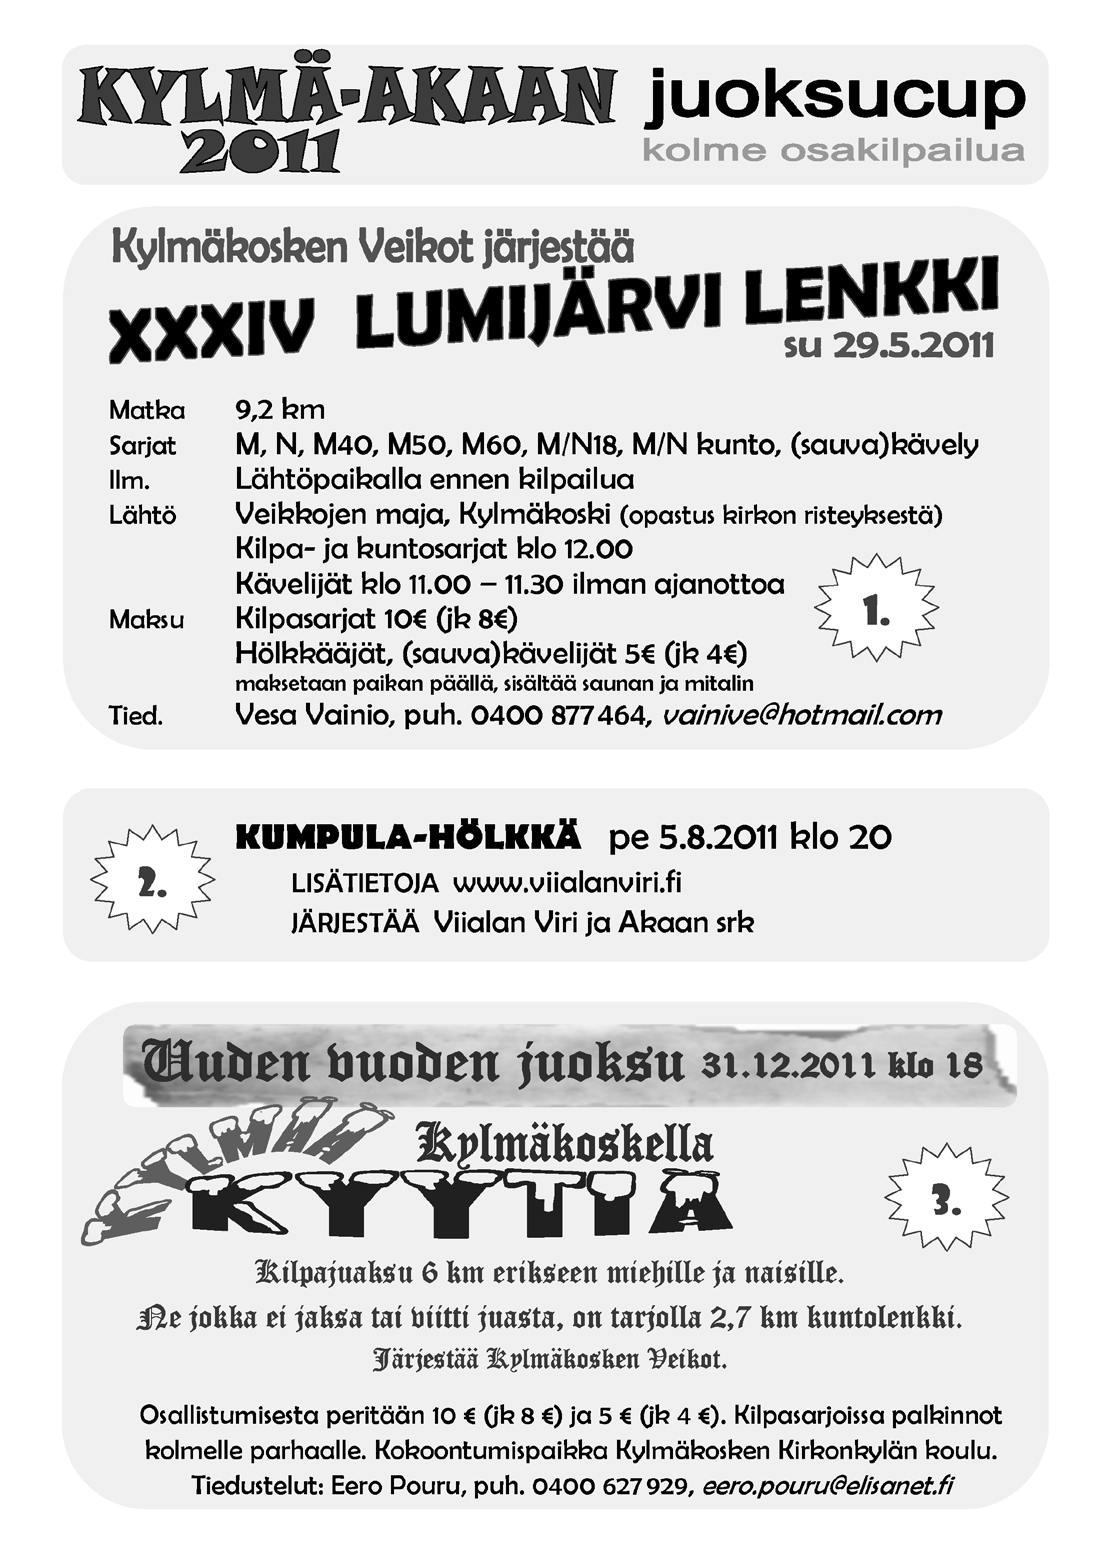 Karhu-viesti juostaan Raumalta Poriin ja matkaa kertyy noin 50km, osuuksia on seitsemän matkojen ollessa 5-11km välillä.